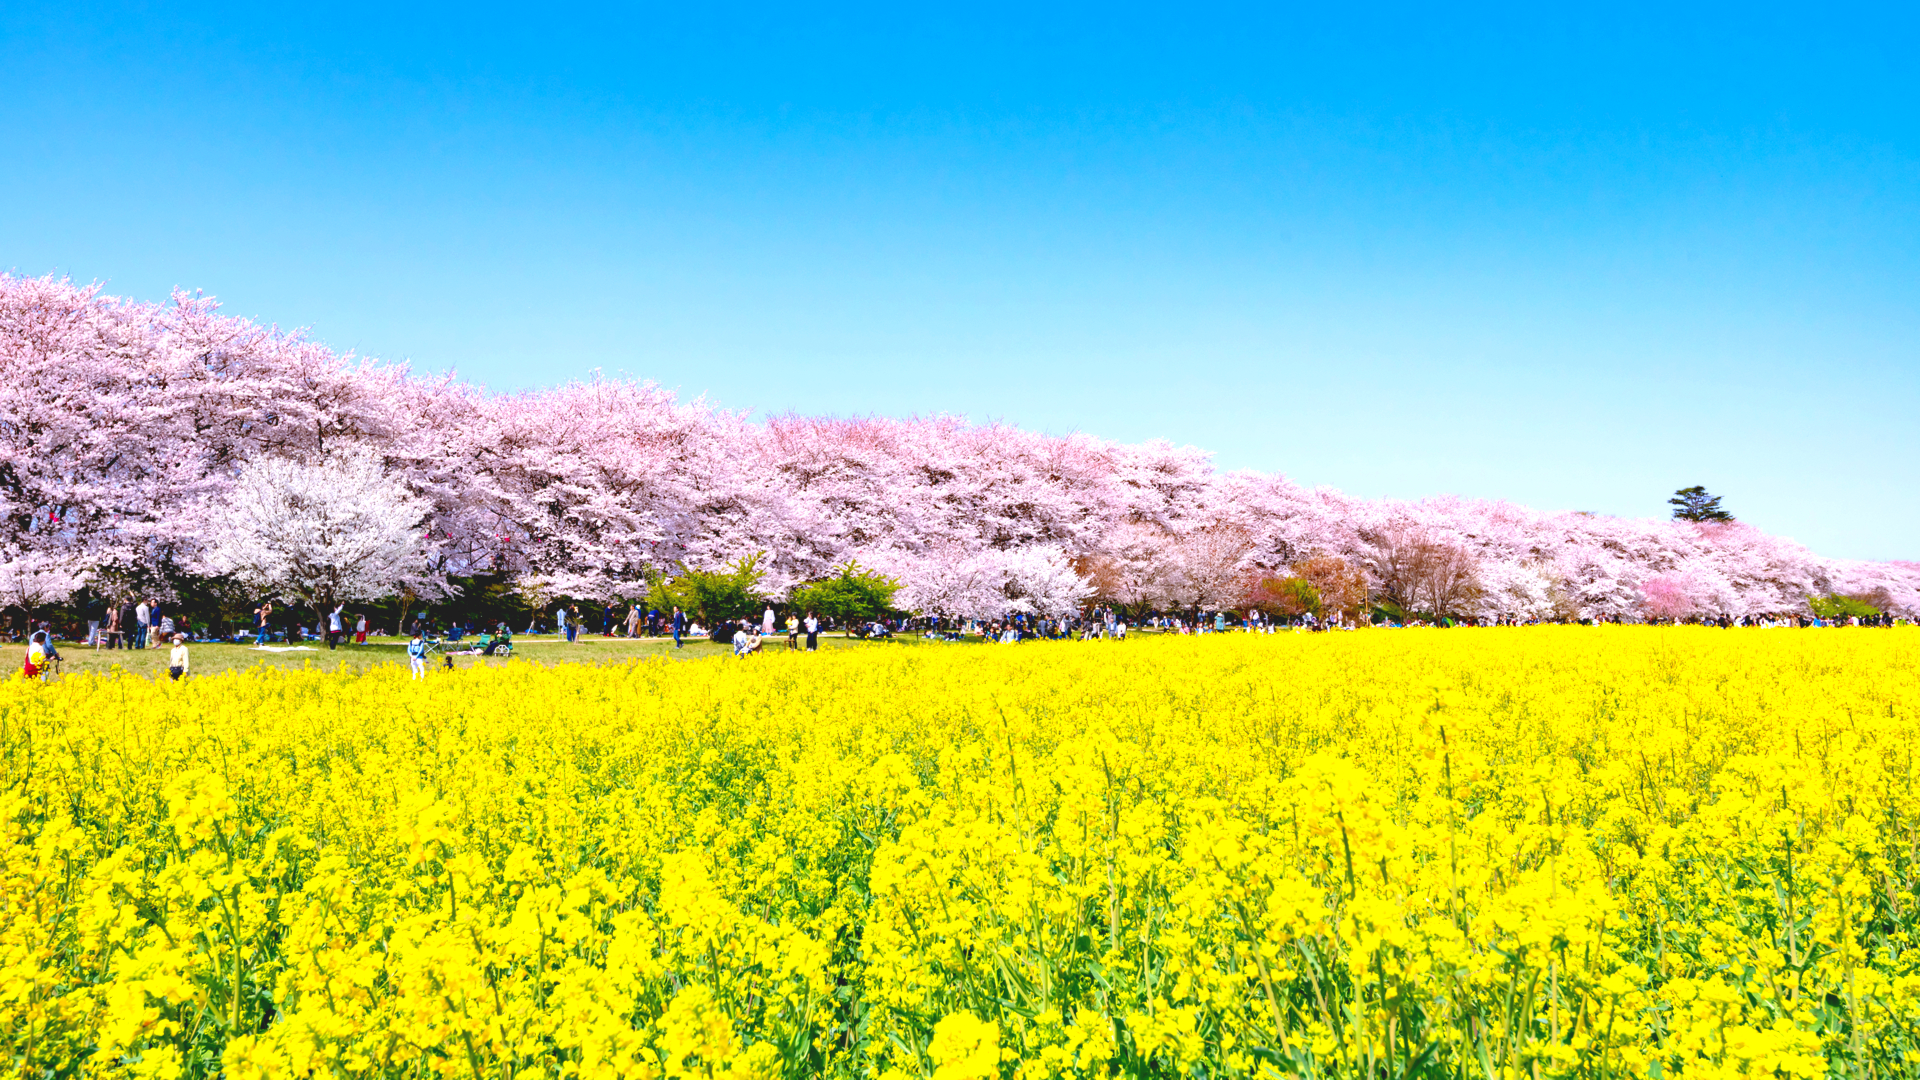 まぶたを閉じても思い出す 関東 菜の花と桜 絶景スポット5選 Trip Editor